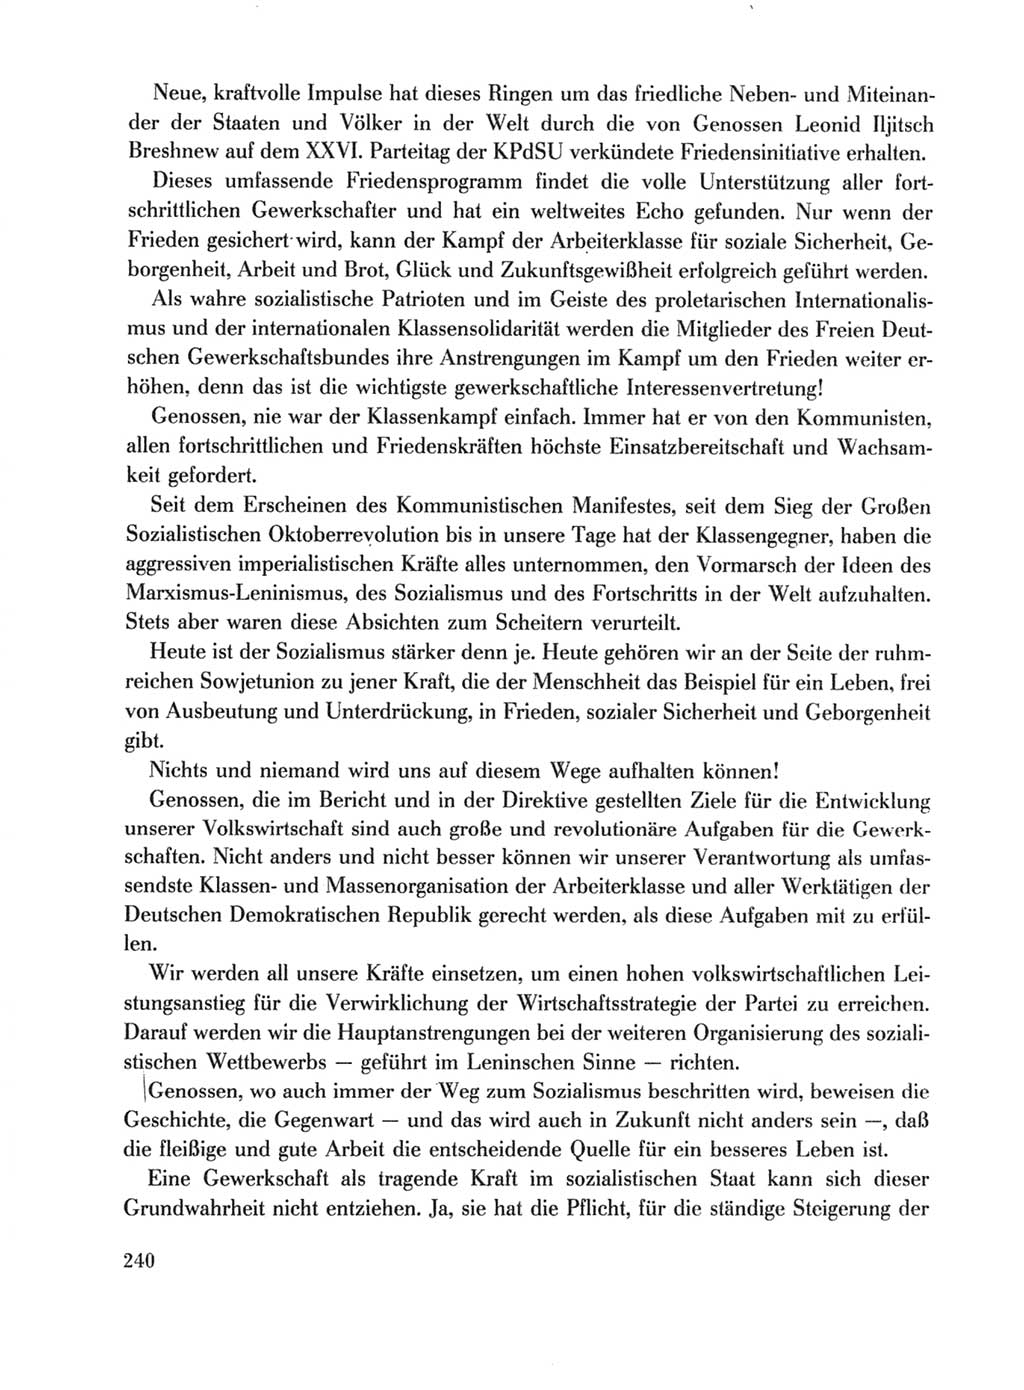 Protokoll der Verhandlungen des Ⅹ. Parteitages der Sozialistischen Einheitspartei Deutschlands (SED) [Deutsche Demokratische Republik (DDR)] 1981, Band 1, Seite 240 (Prot. Verh. Ⅹ. PT SED DDR 1981, Bd. 1, S. 240)